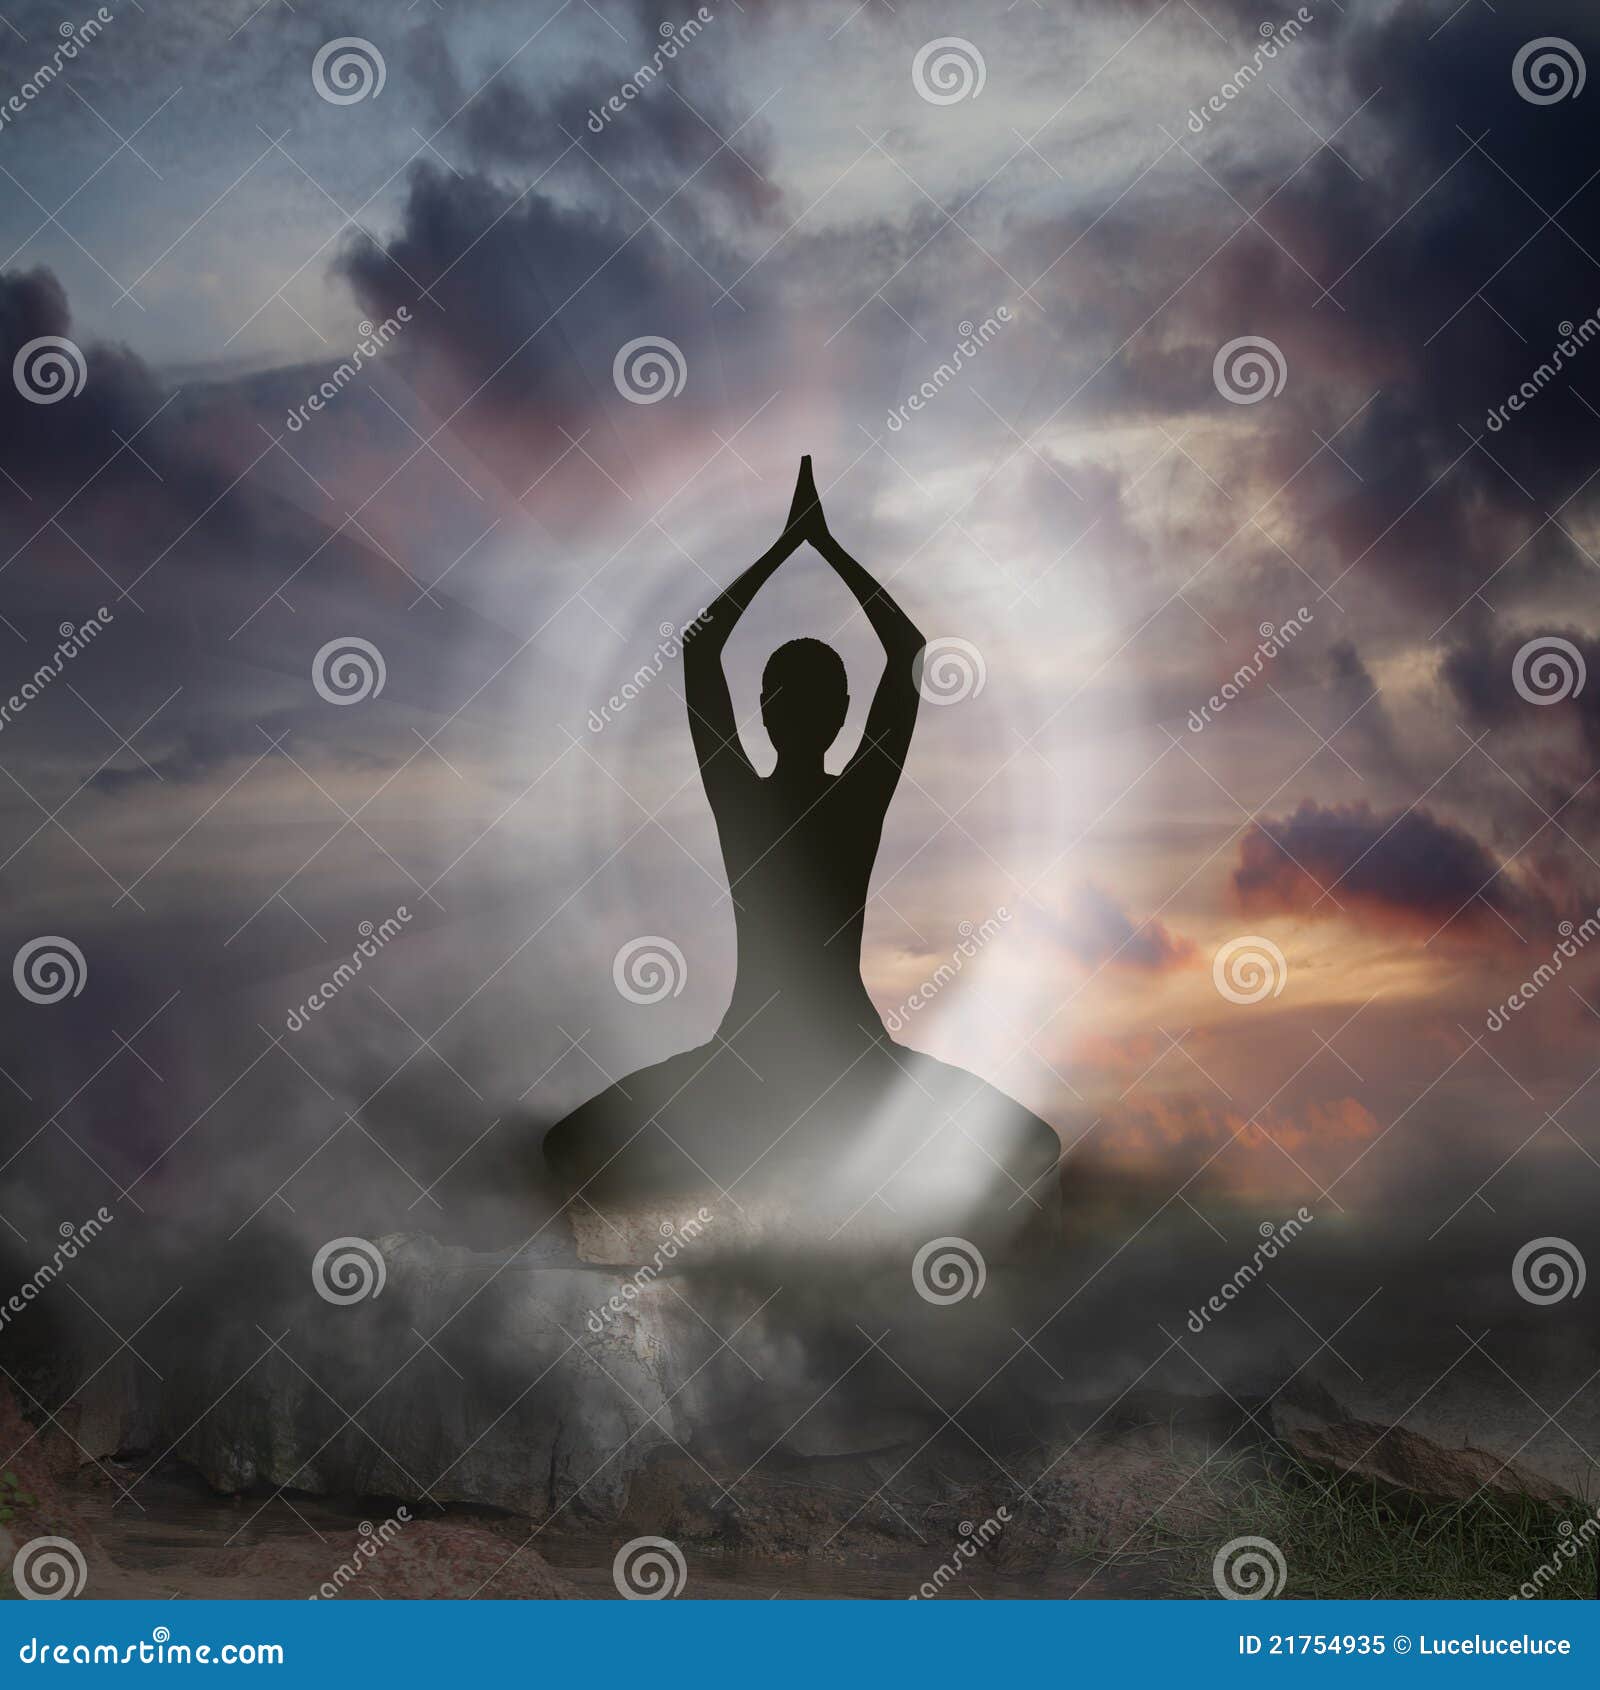 yoga and spirituality